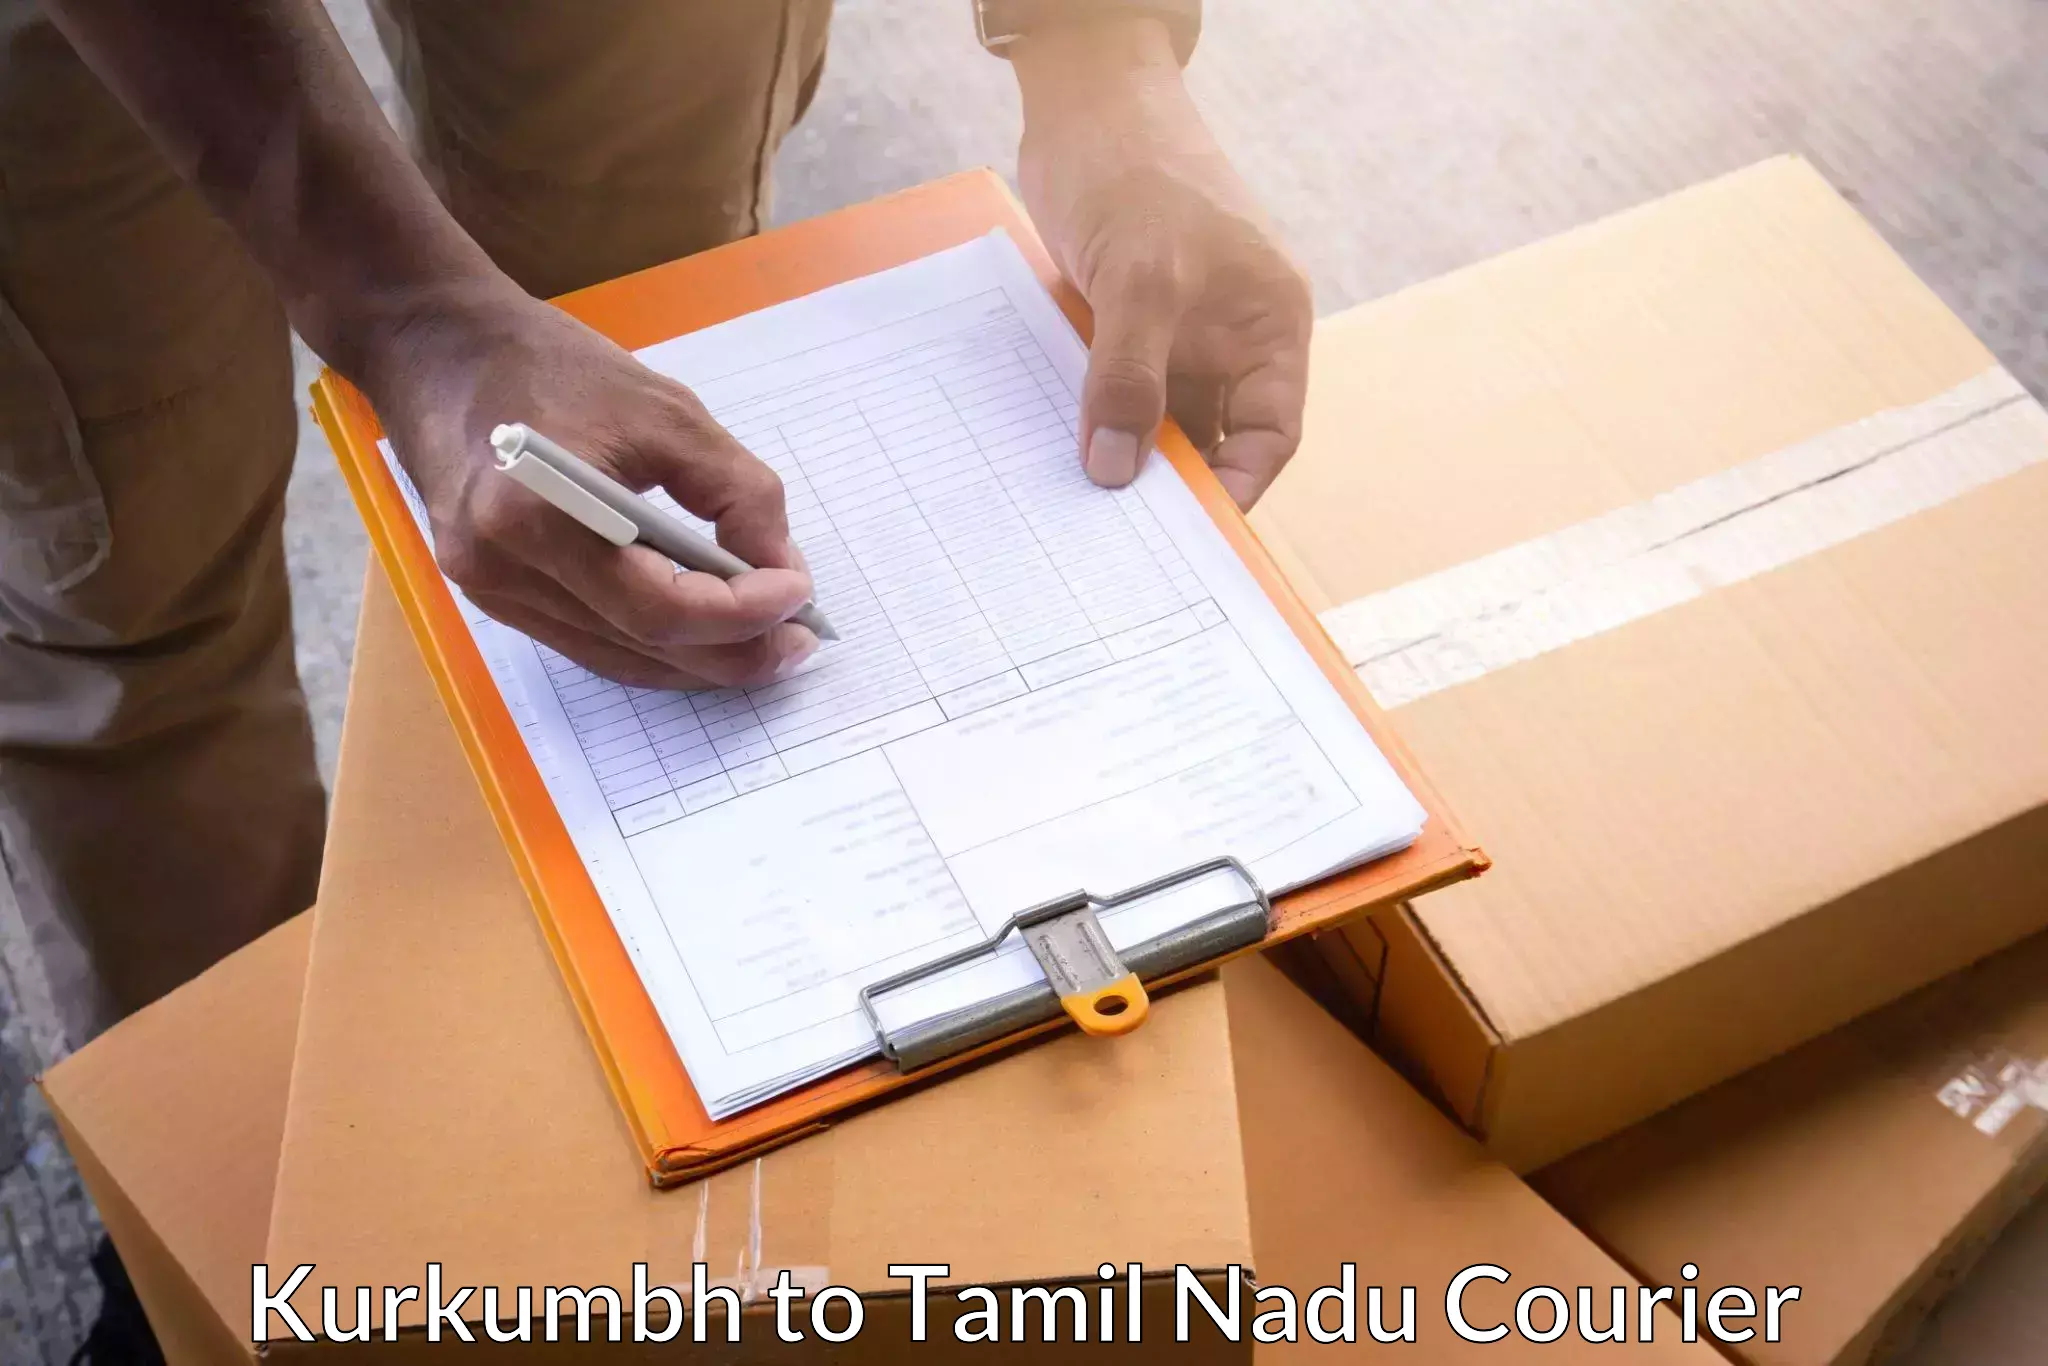 Courier insurance in Kurkumbh to Rajapalayam